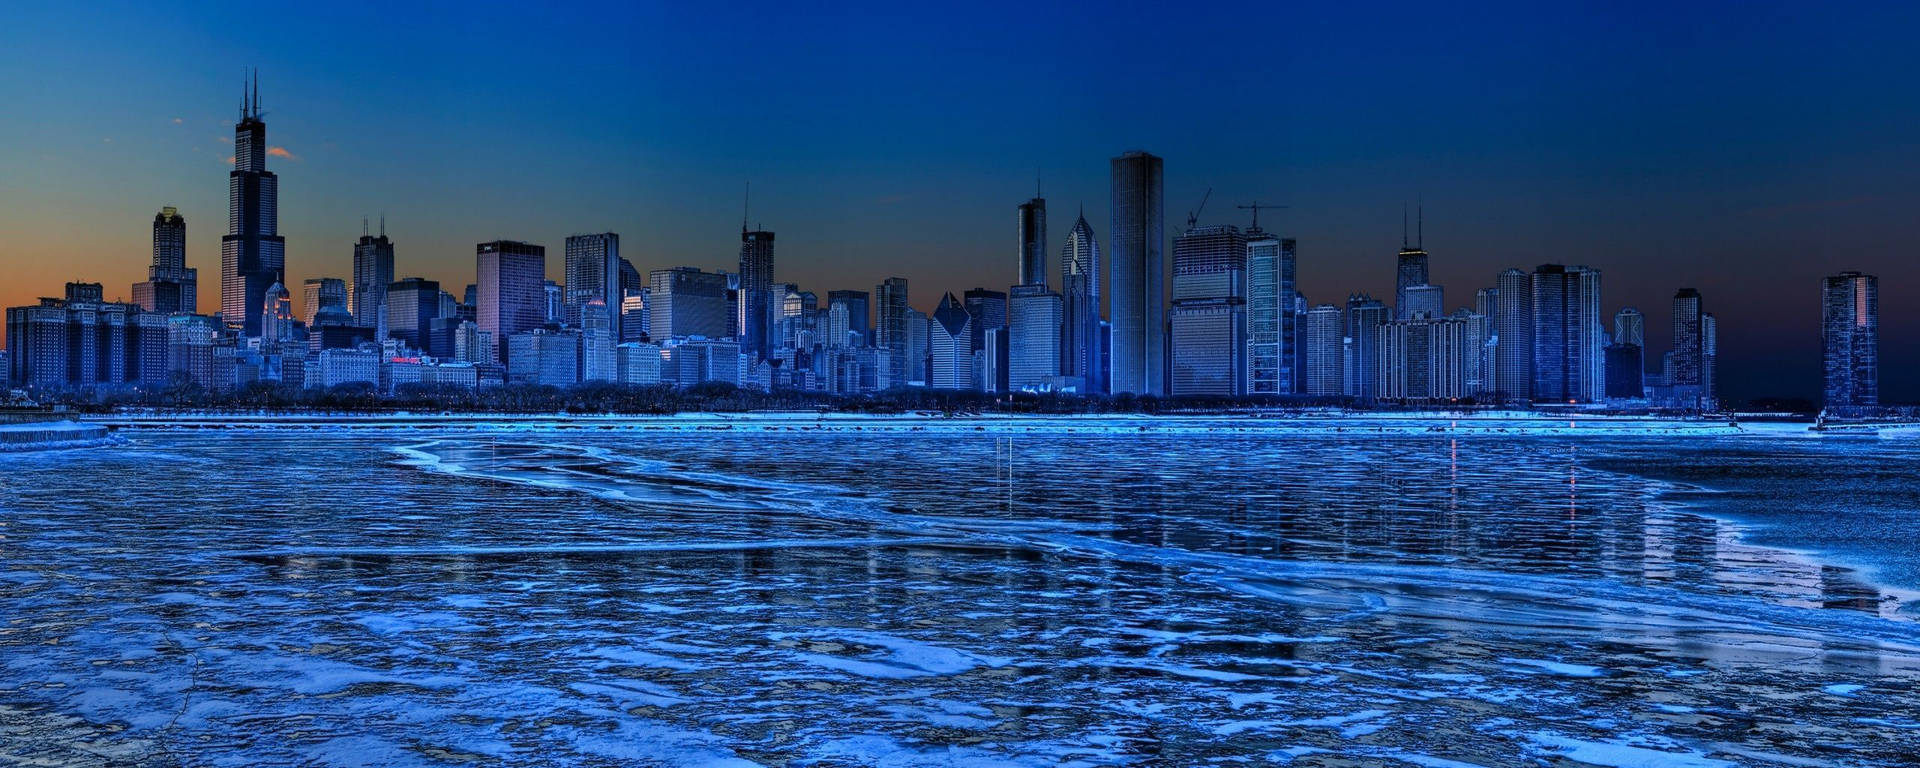 Cityscape Across Lake Michigan In Winter For Monitor Wallpaper